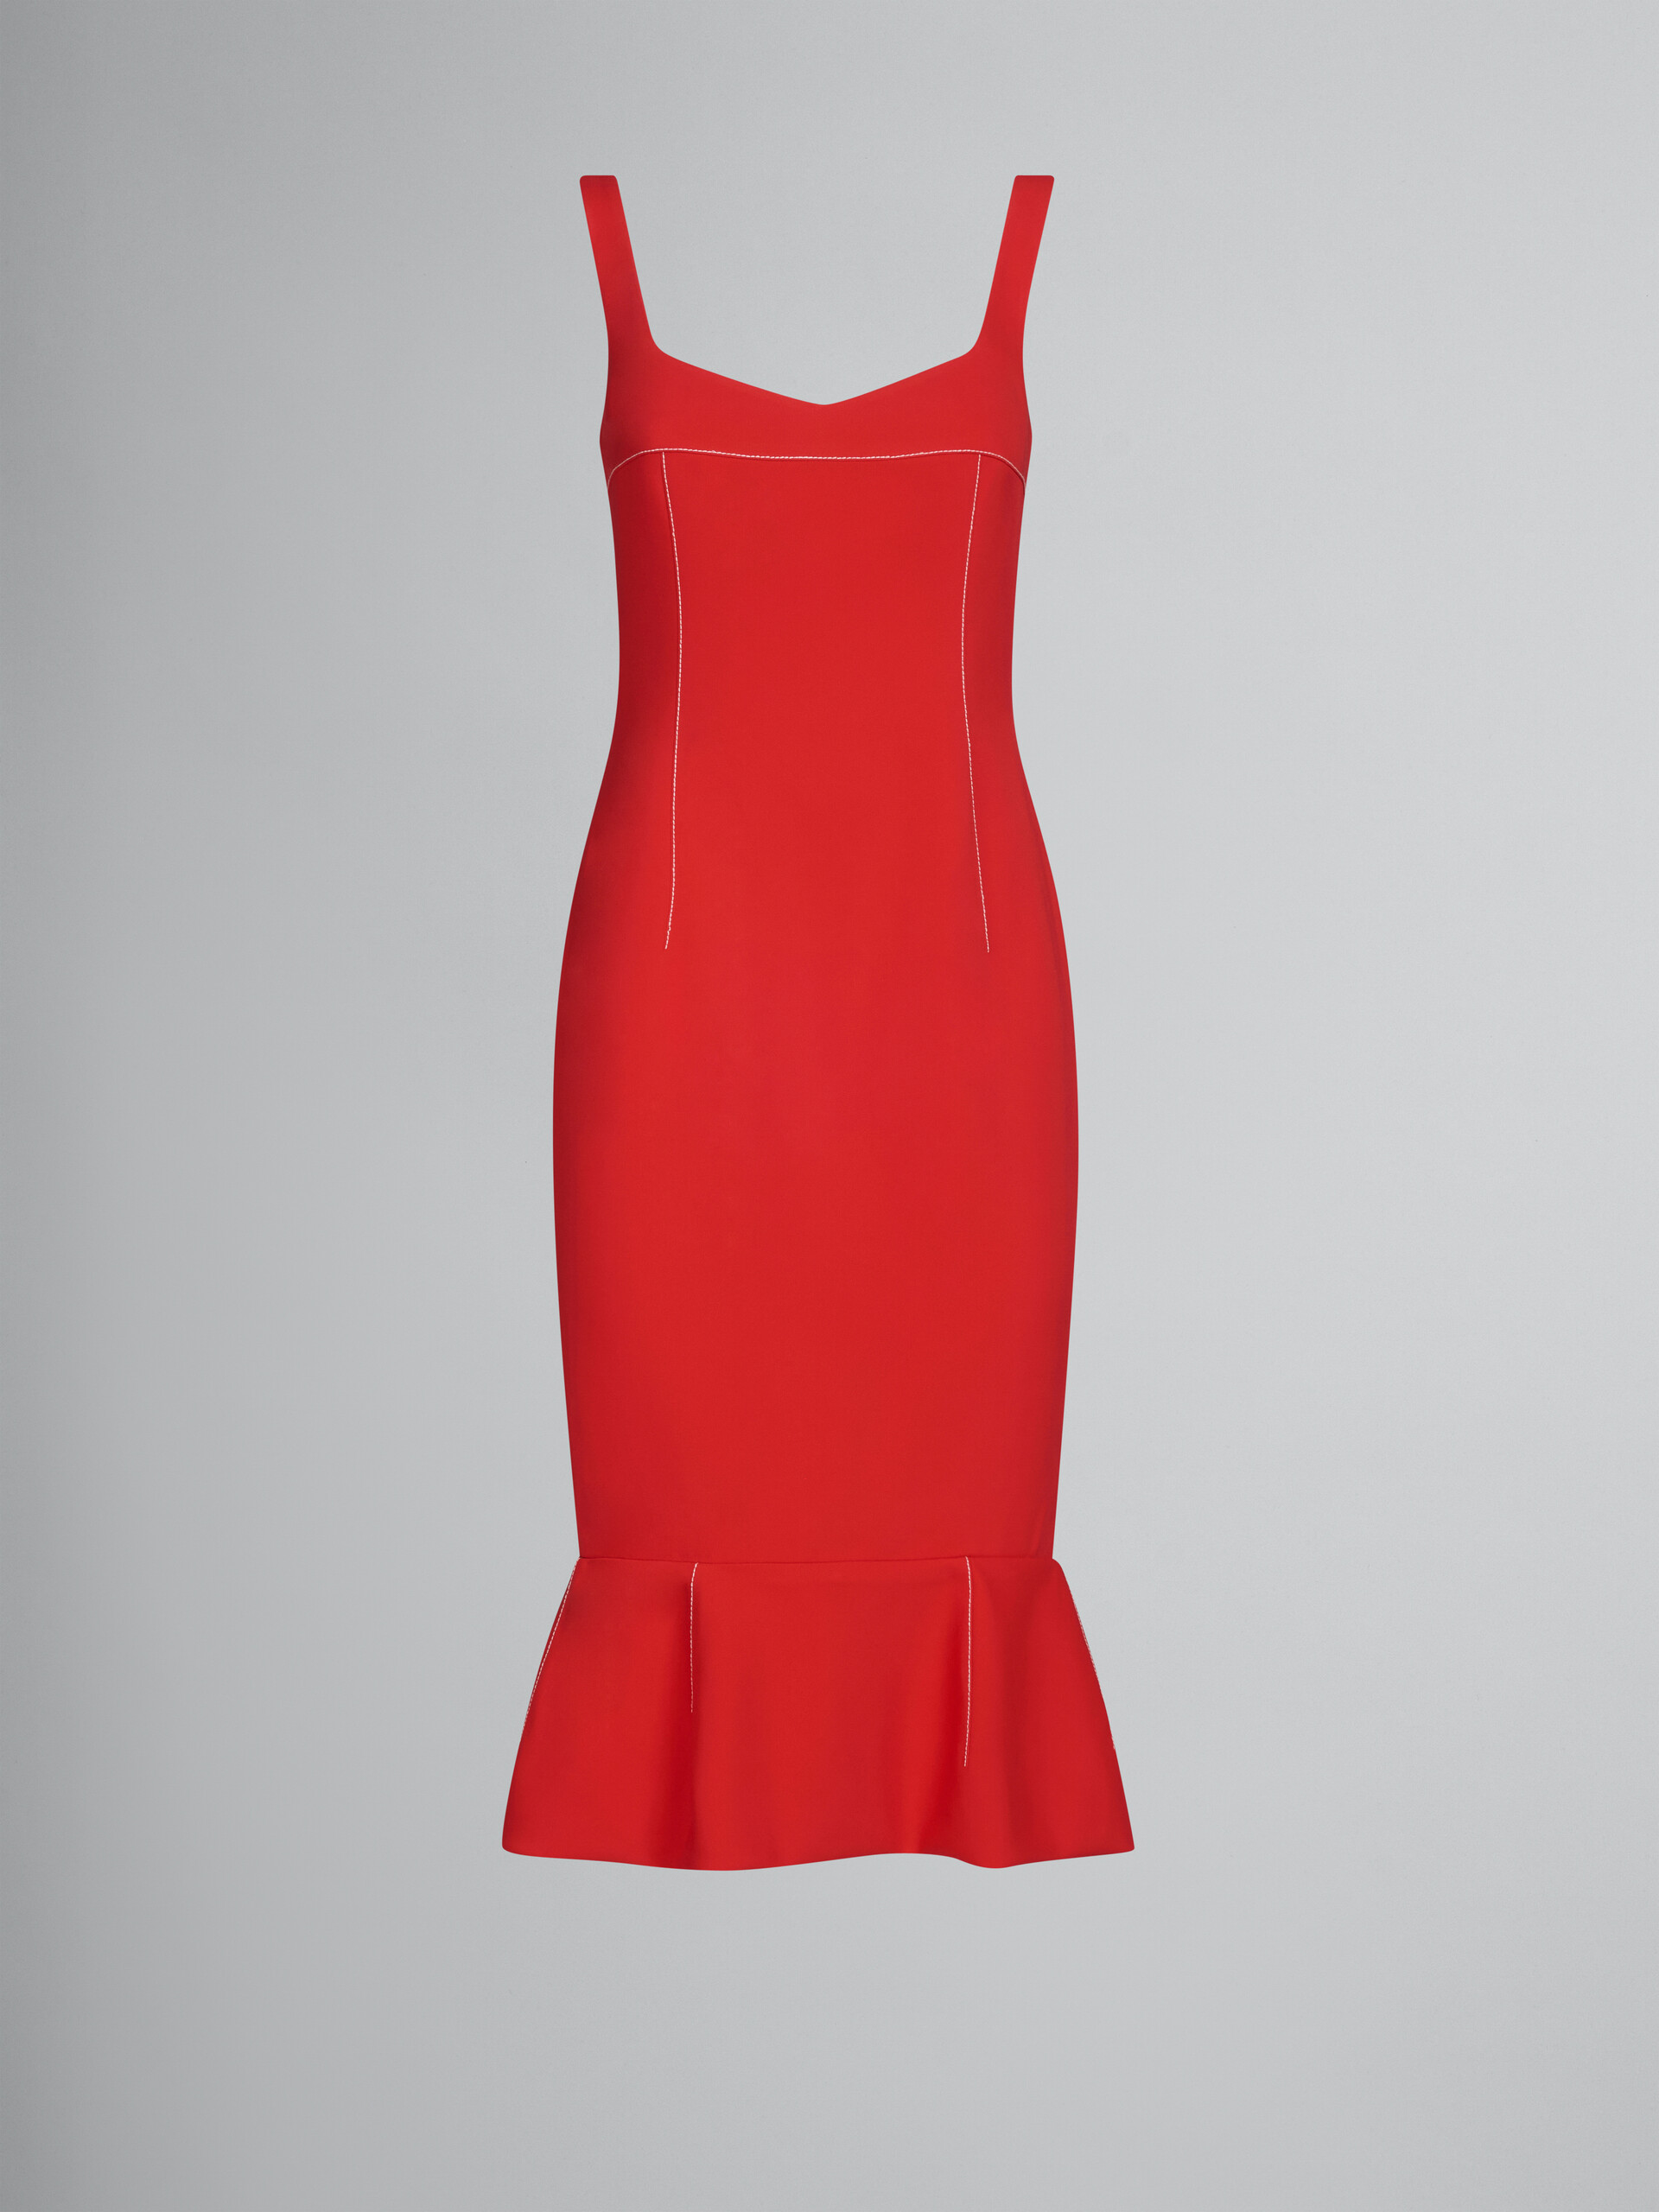 Red cady sheath dress with flounce hem - Dresses - Image 1